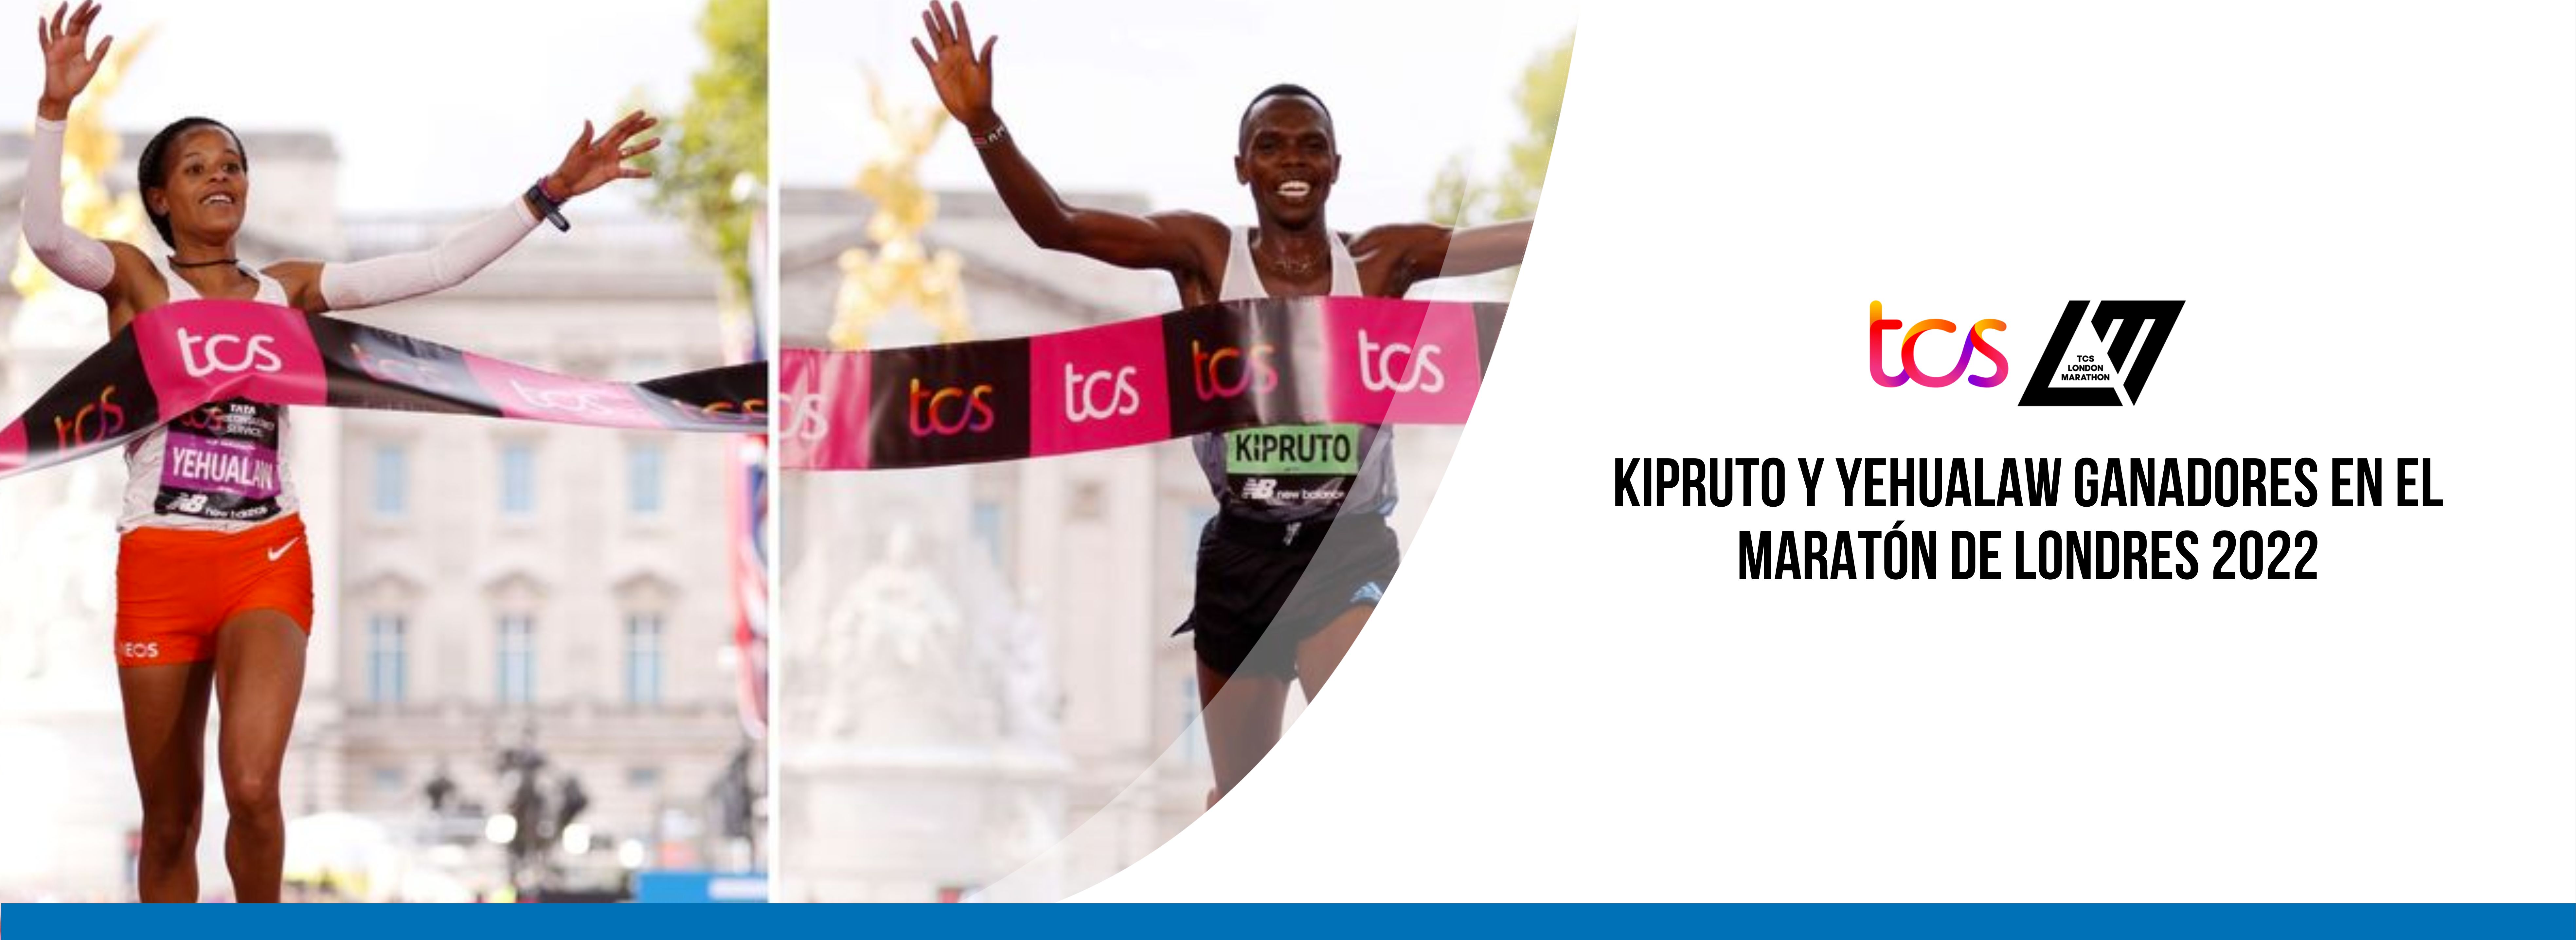 Kipruto y Yehualaw ganadores en el maratÃ³n de Londres 2022